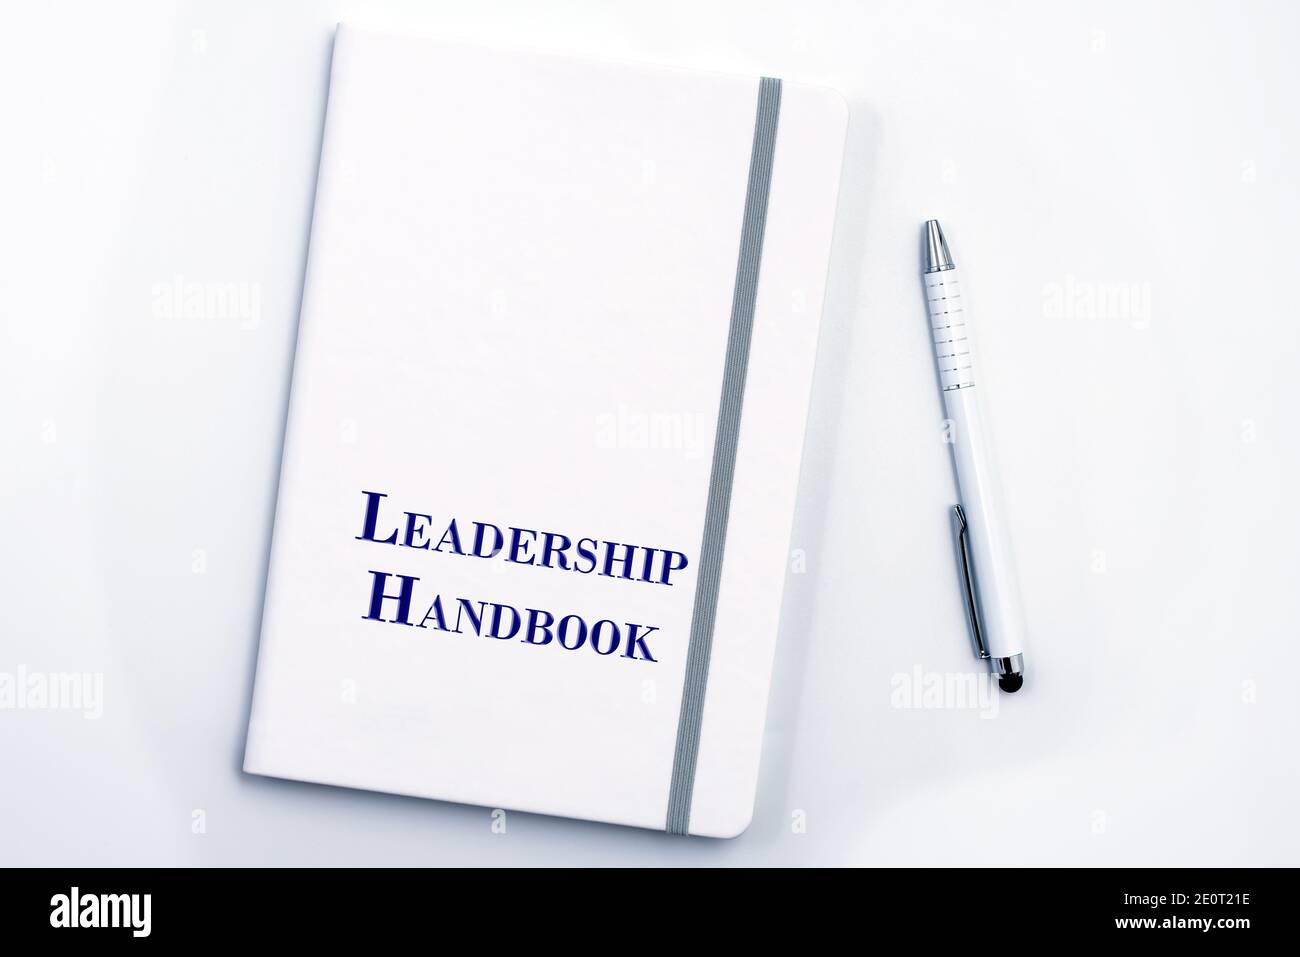 White Leadership Manuale o manuale con penna bianca sulla superficie bianca del tavolo - la politica di gestione del personale, spiega gli obiettivi aziendali, i risultati, definisce Lea Foto Stock